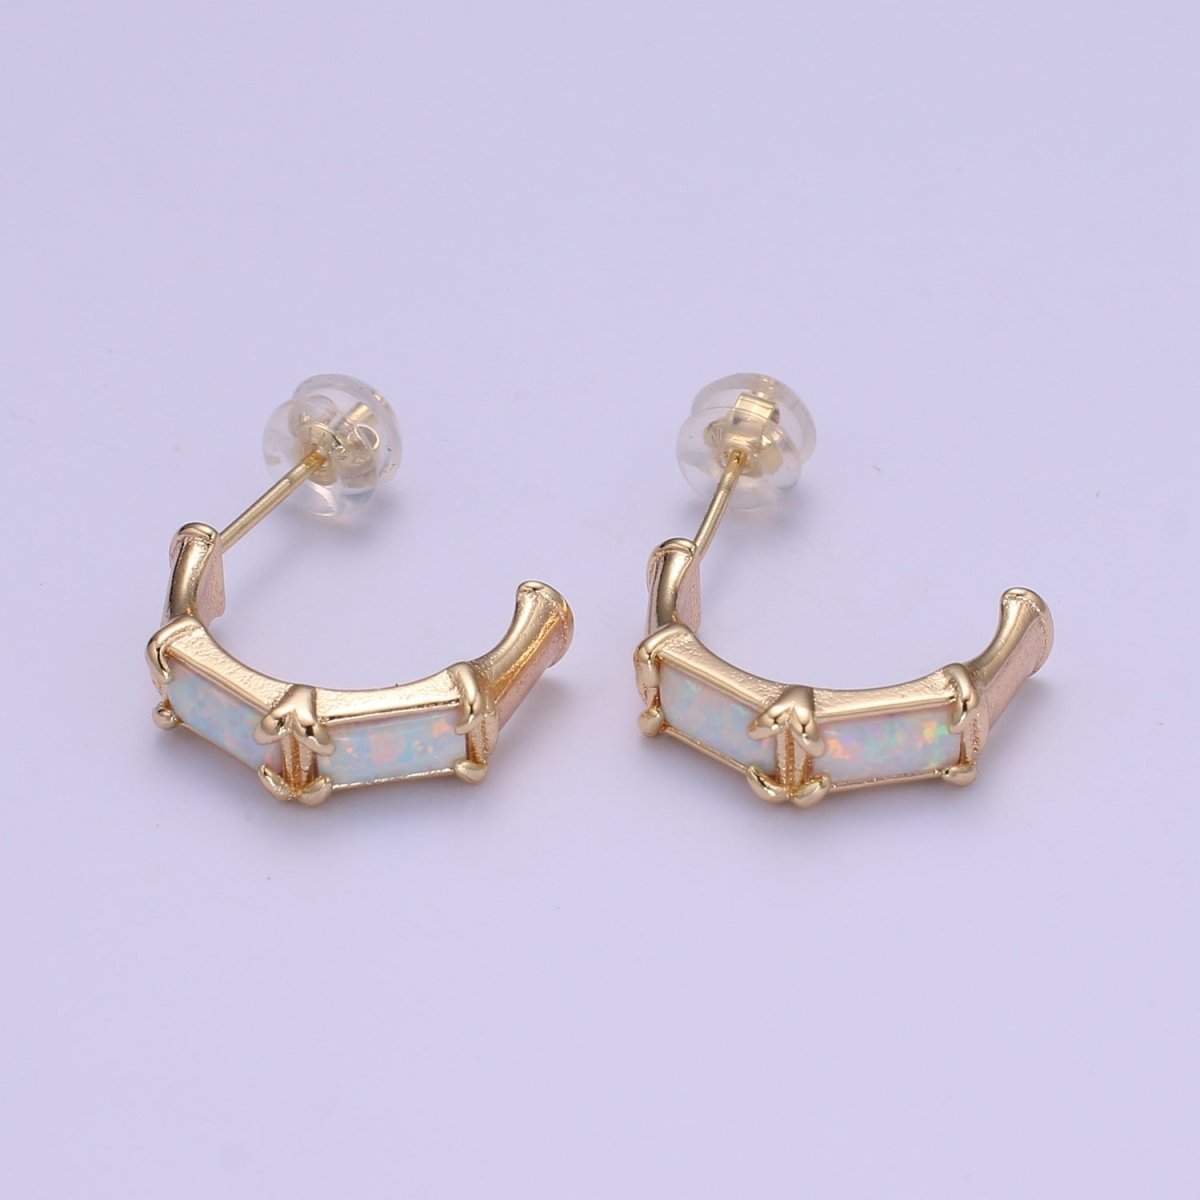 20mm Hoop Minimalist Opal Hoop Earrings in 18k Gold Filled Earring Pink Blue White Opal, Bamboo Style Jewellery Dainty Hoop Earring for gift P-078~P-080 - DLUXCA